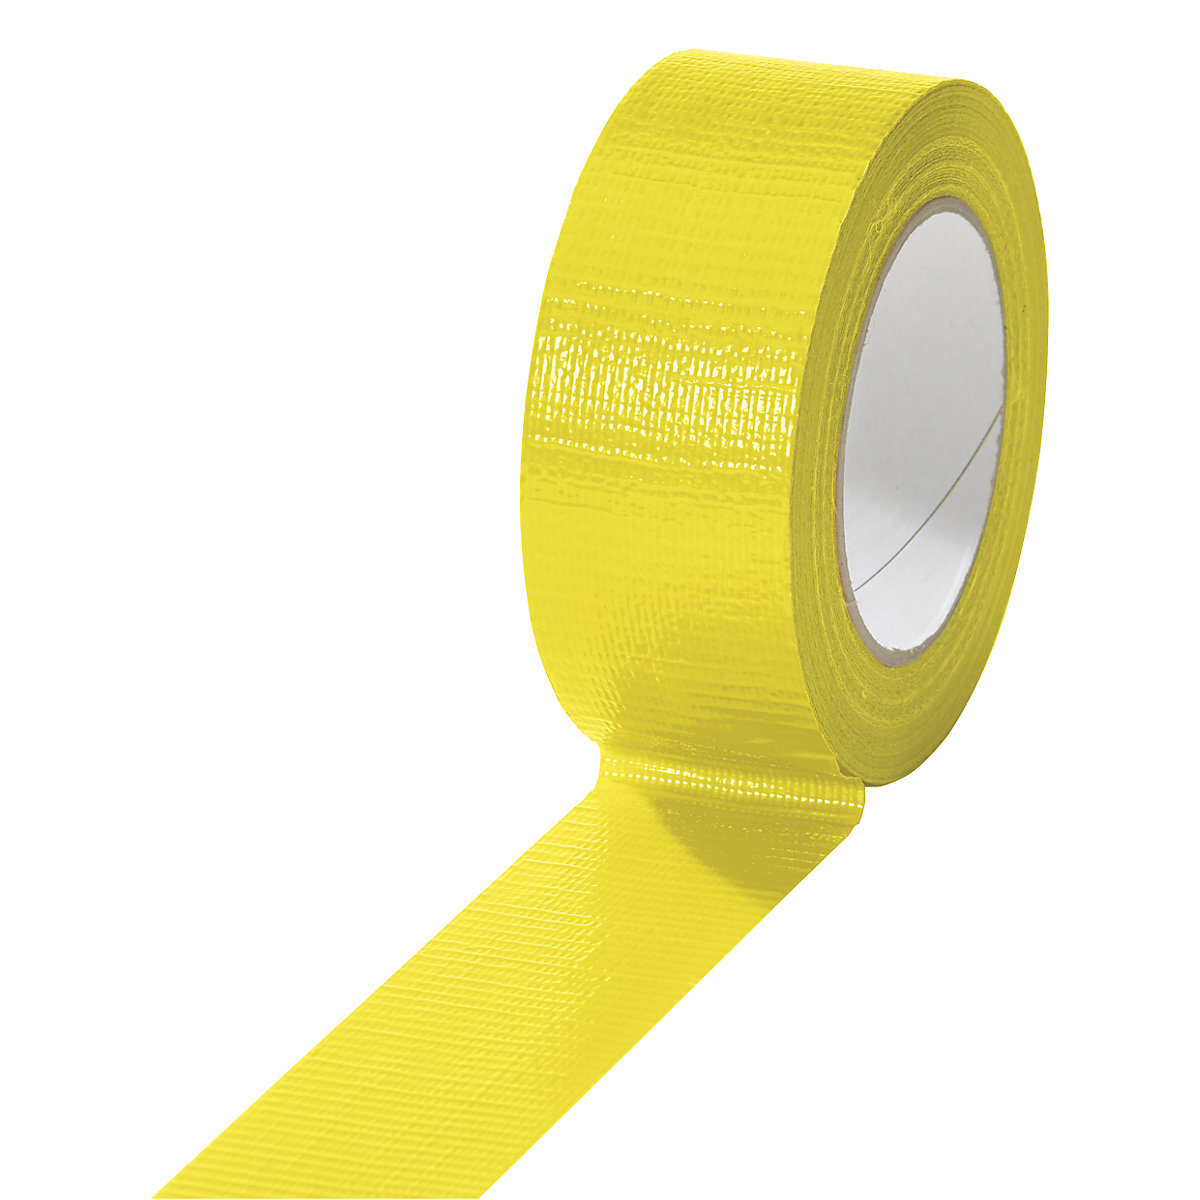 Gewebeband, in verschiedenen Farben, VE 24 Rollen, gelb, Bandbreite 38 mm